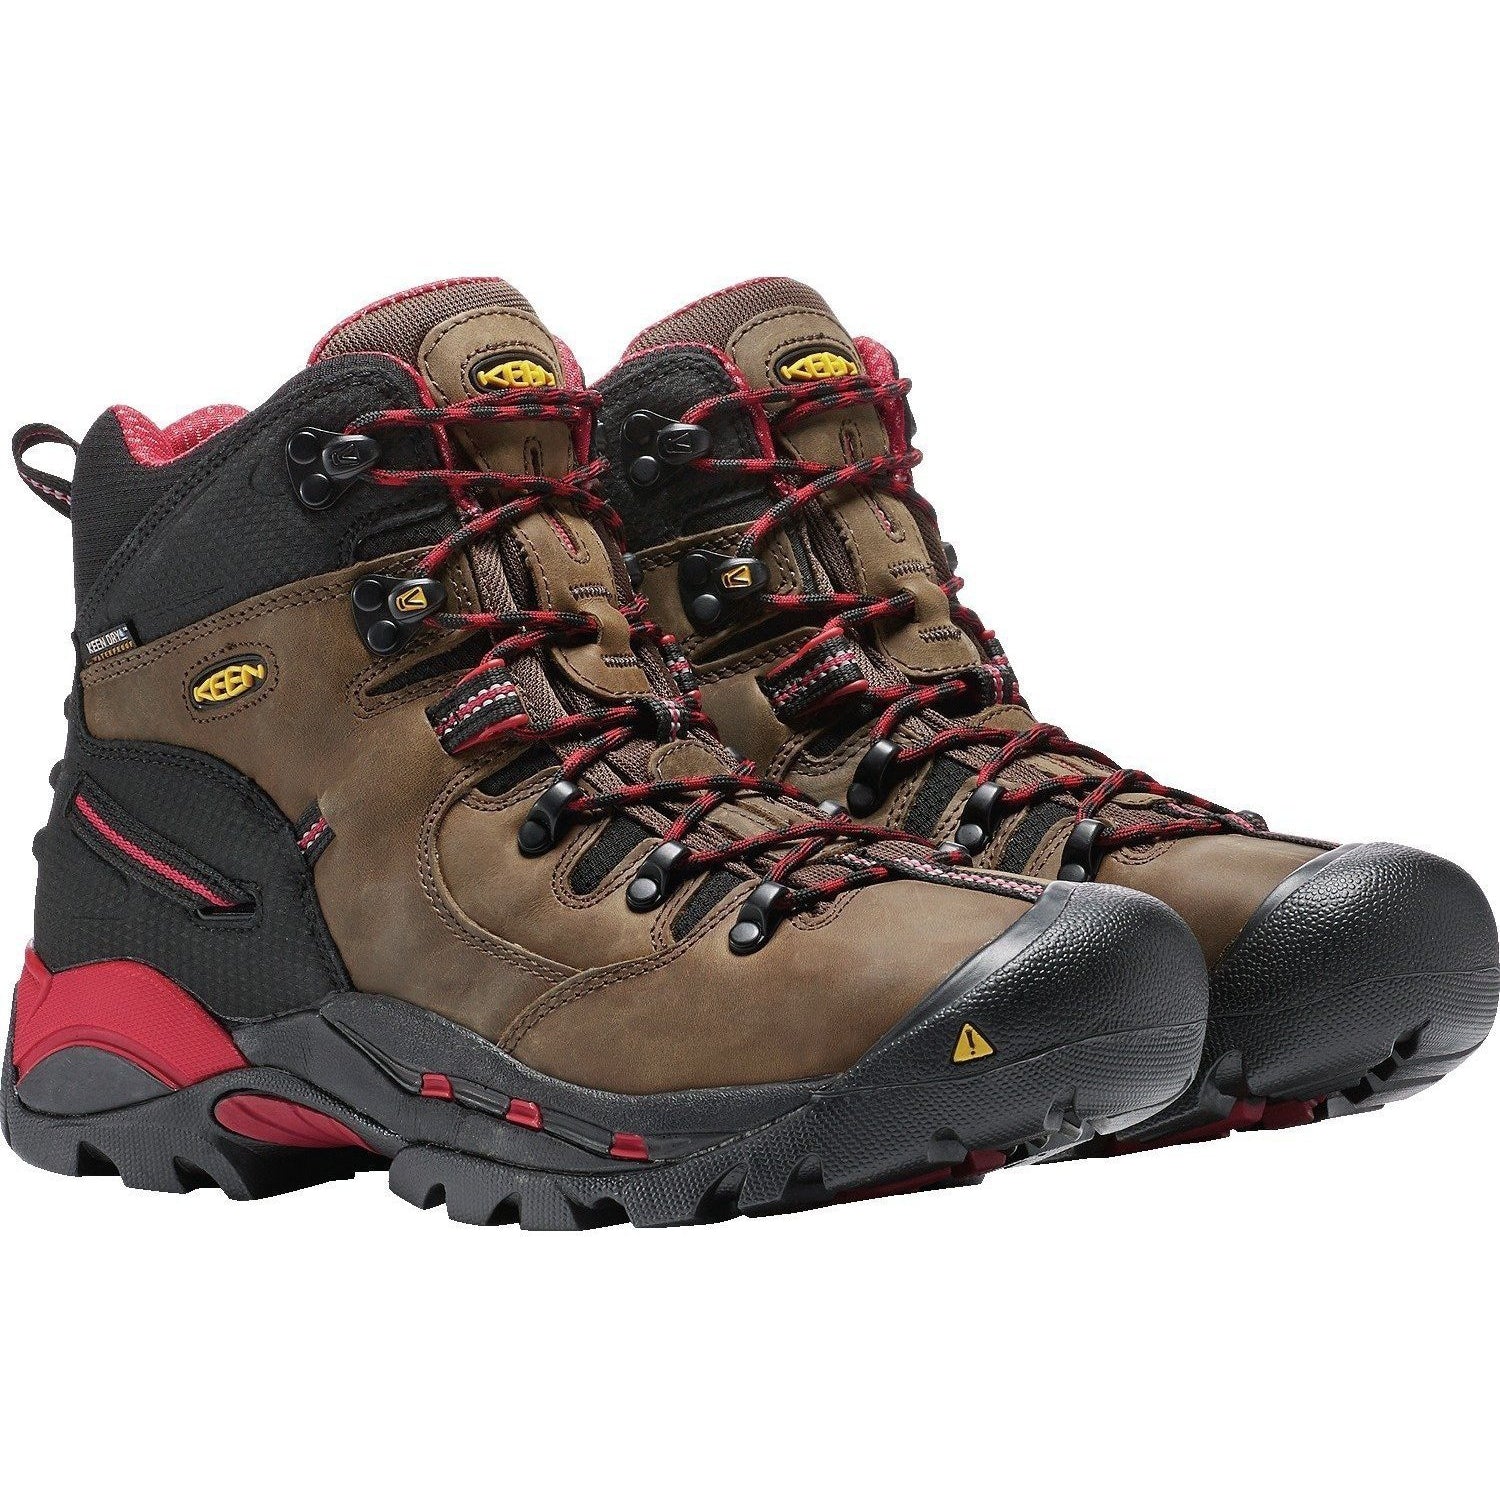 Keen Utility Pittsburgh Steel Toe Hiker Work Boot - Bison - 1007024 8 / Medium / Bison - Overlook Boots